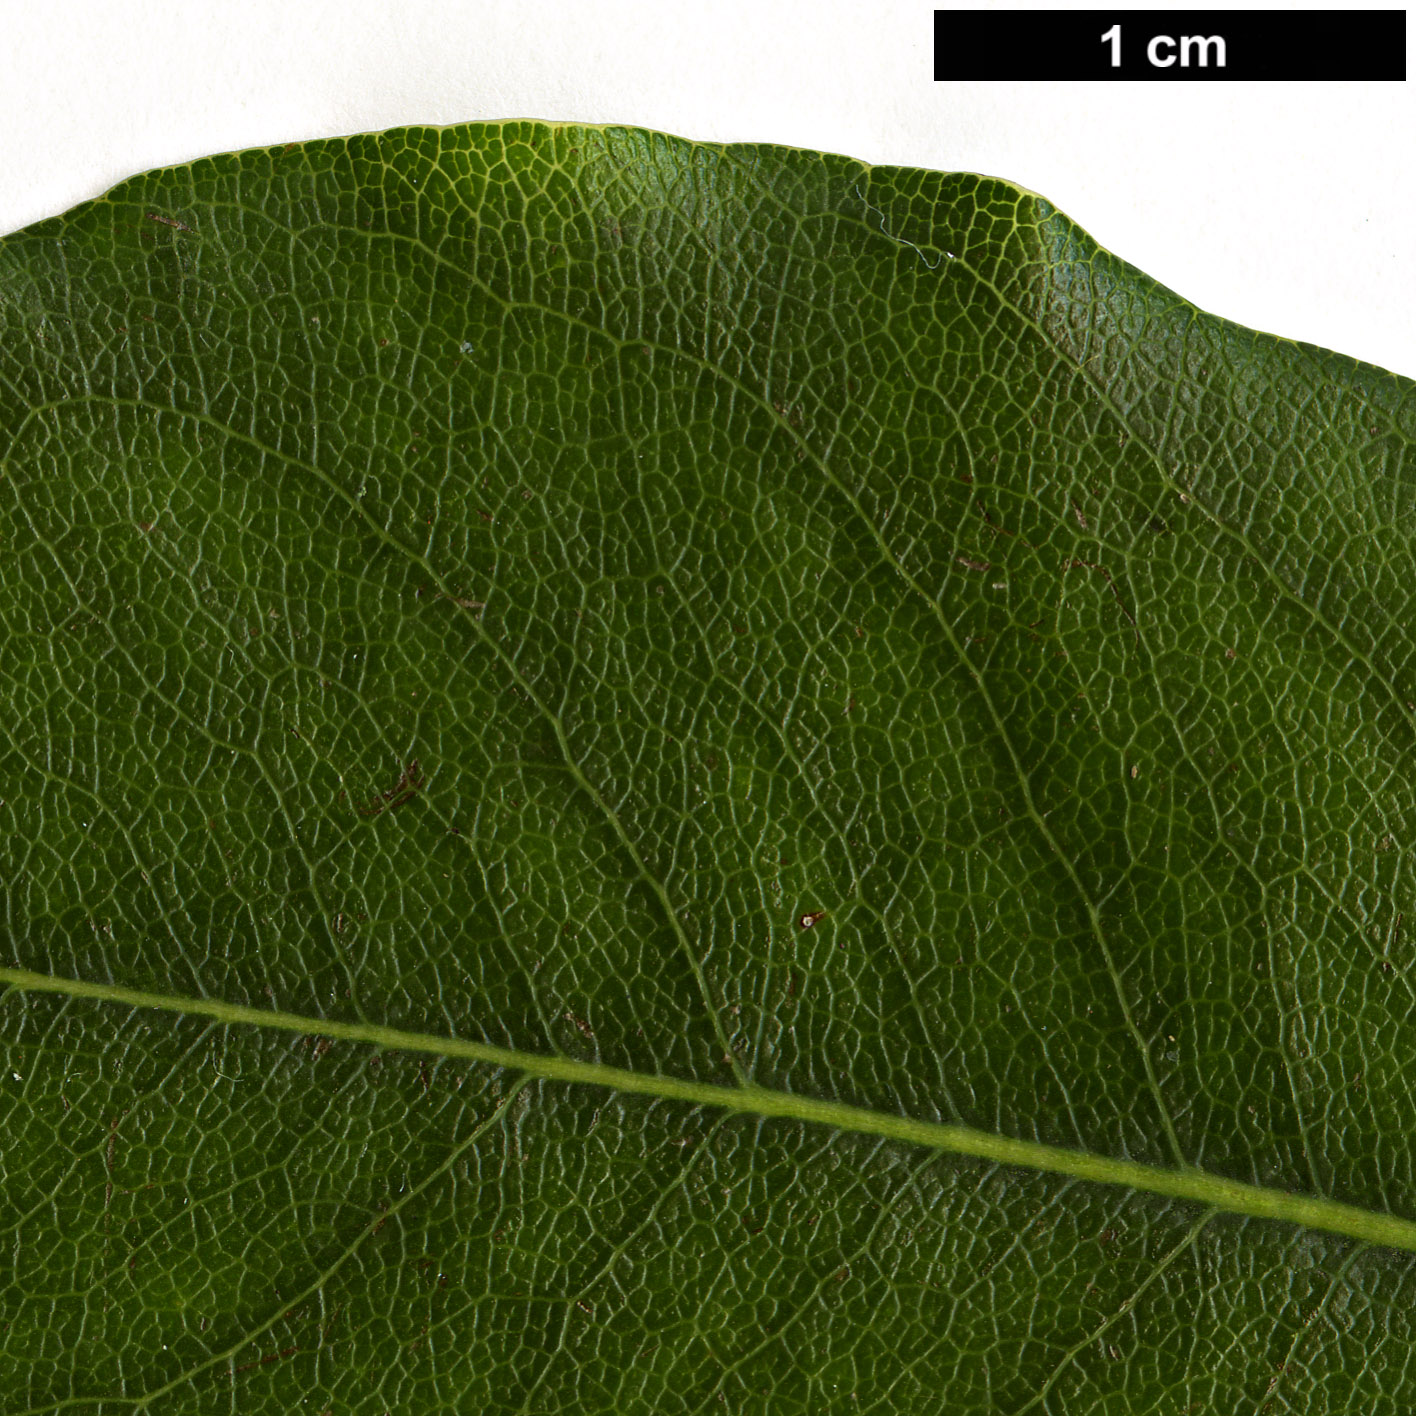 High resolution image: Family: Pittosporaceae - Genus: Pittosporum - Taxon: illicioides